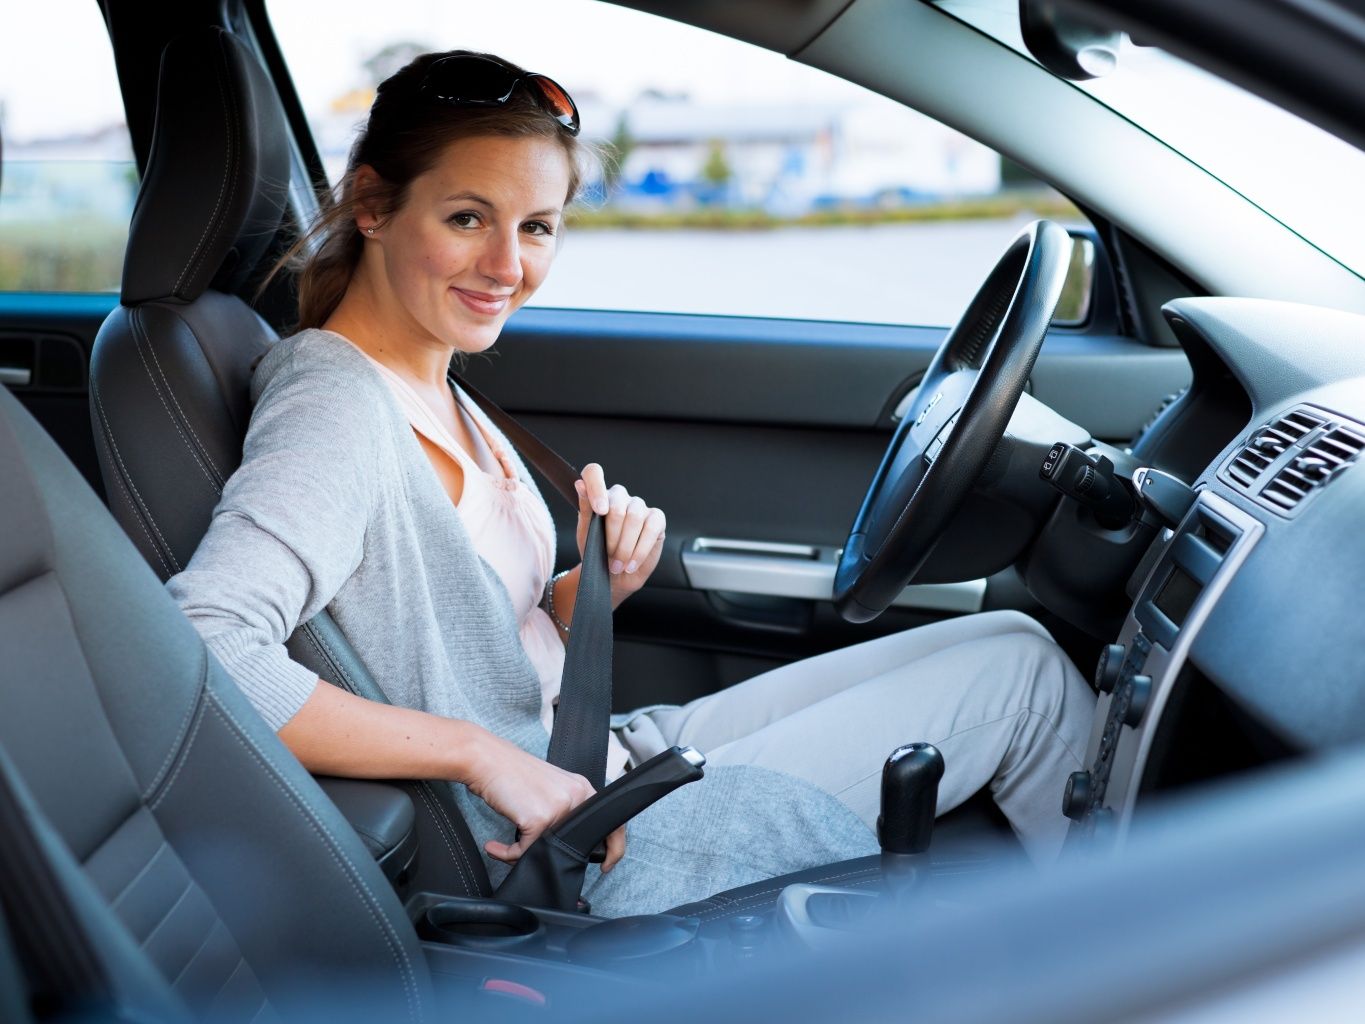 She drive a car now. Безопасность женщины. Девочка управляет машиной. Женщина с синим лицом управляет авто.